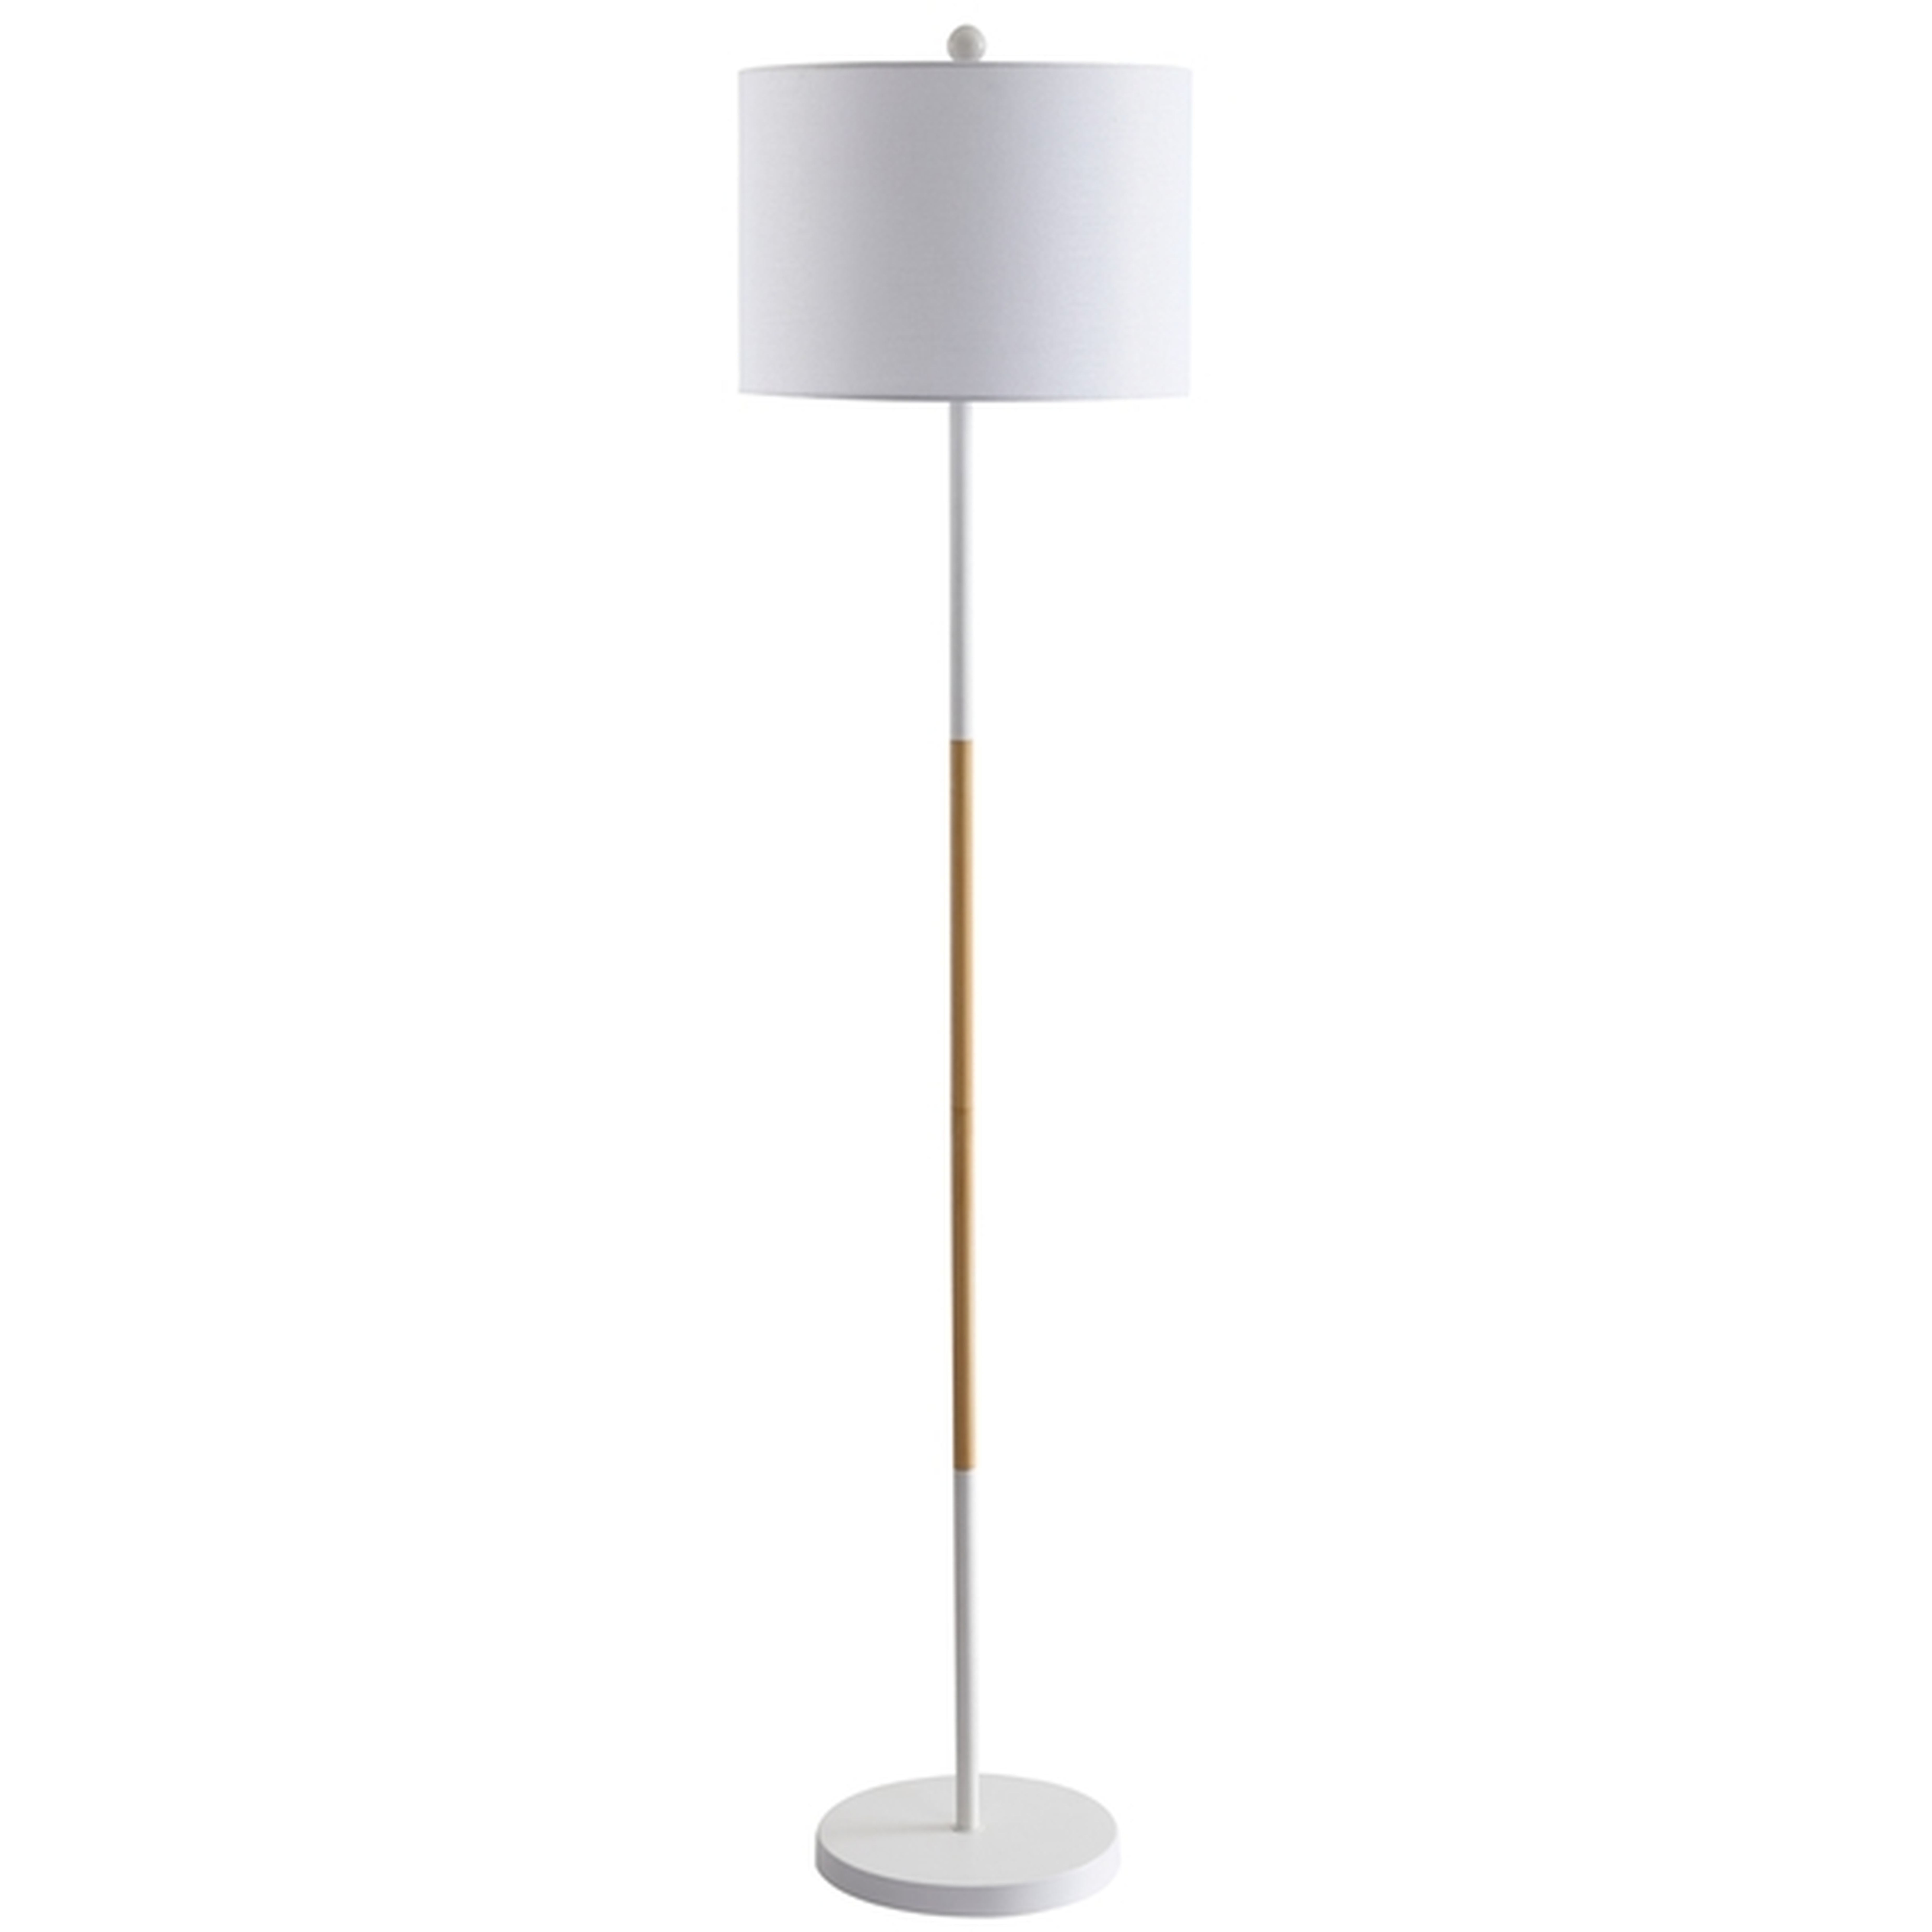 Melrose Floor Lamp, White & Wood Finish - Arlo Home